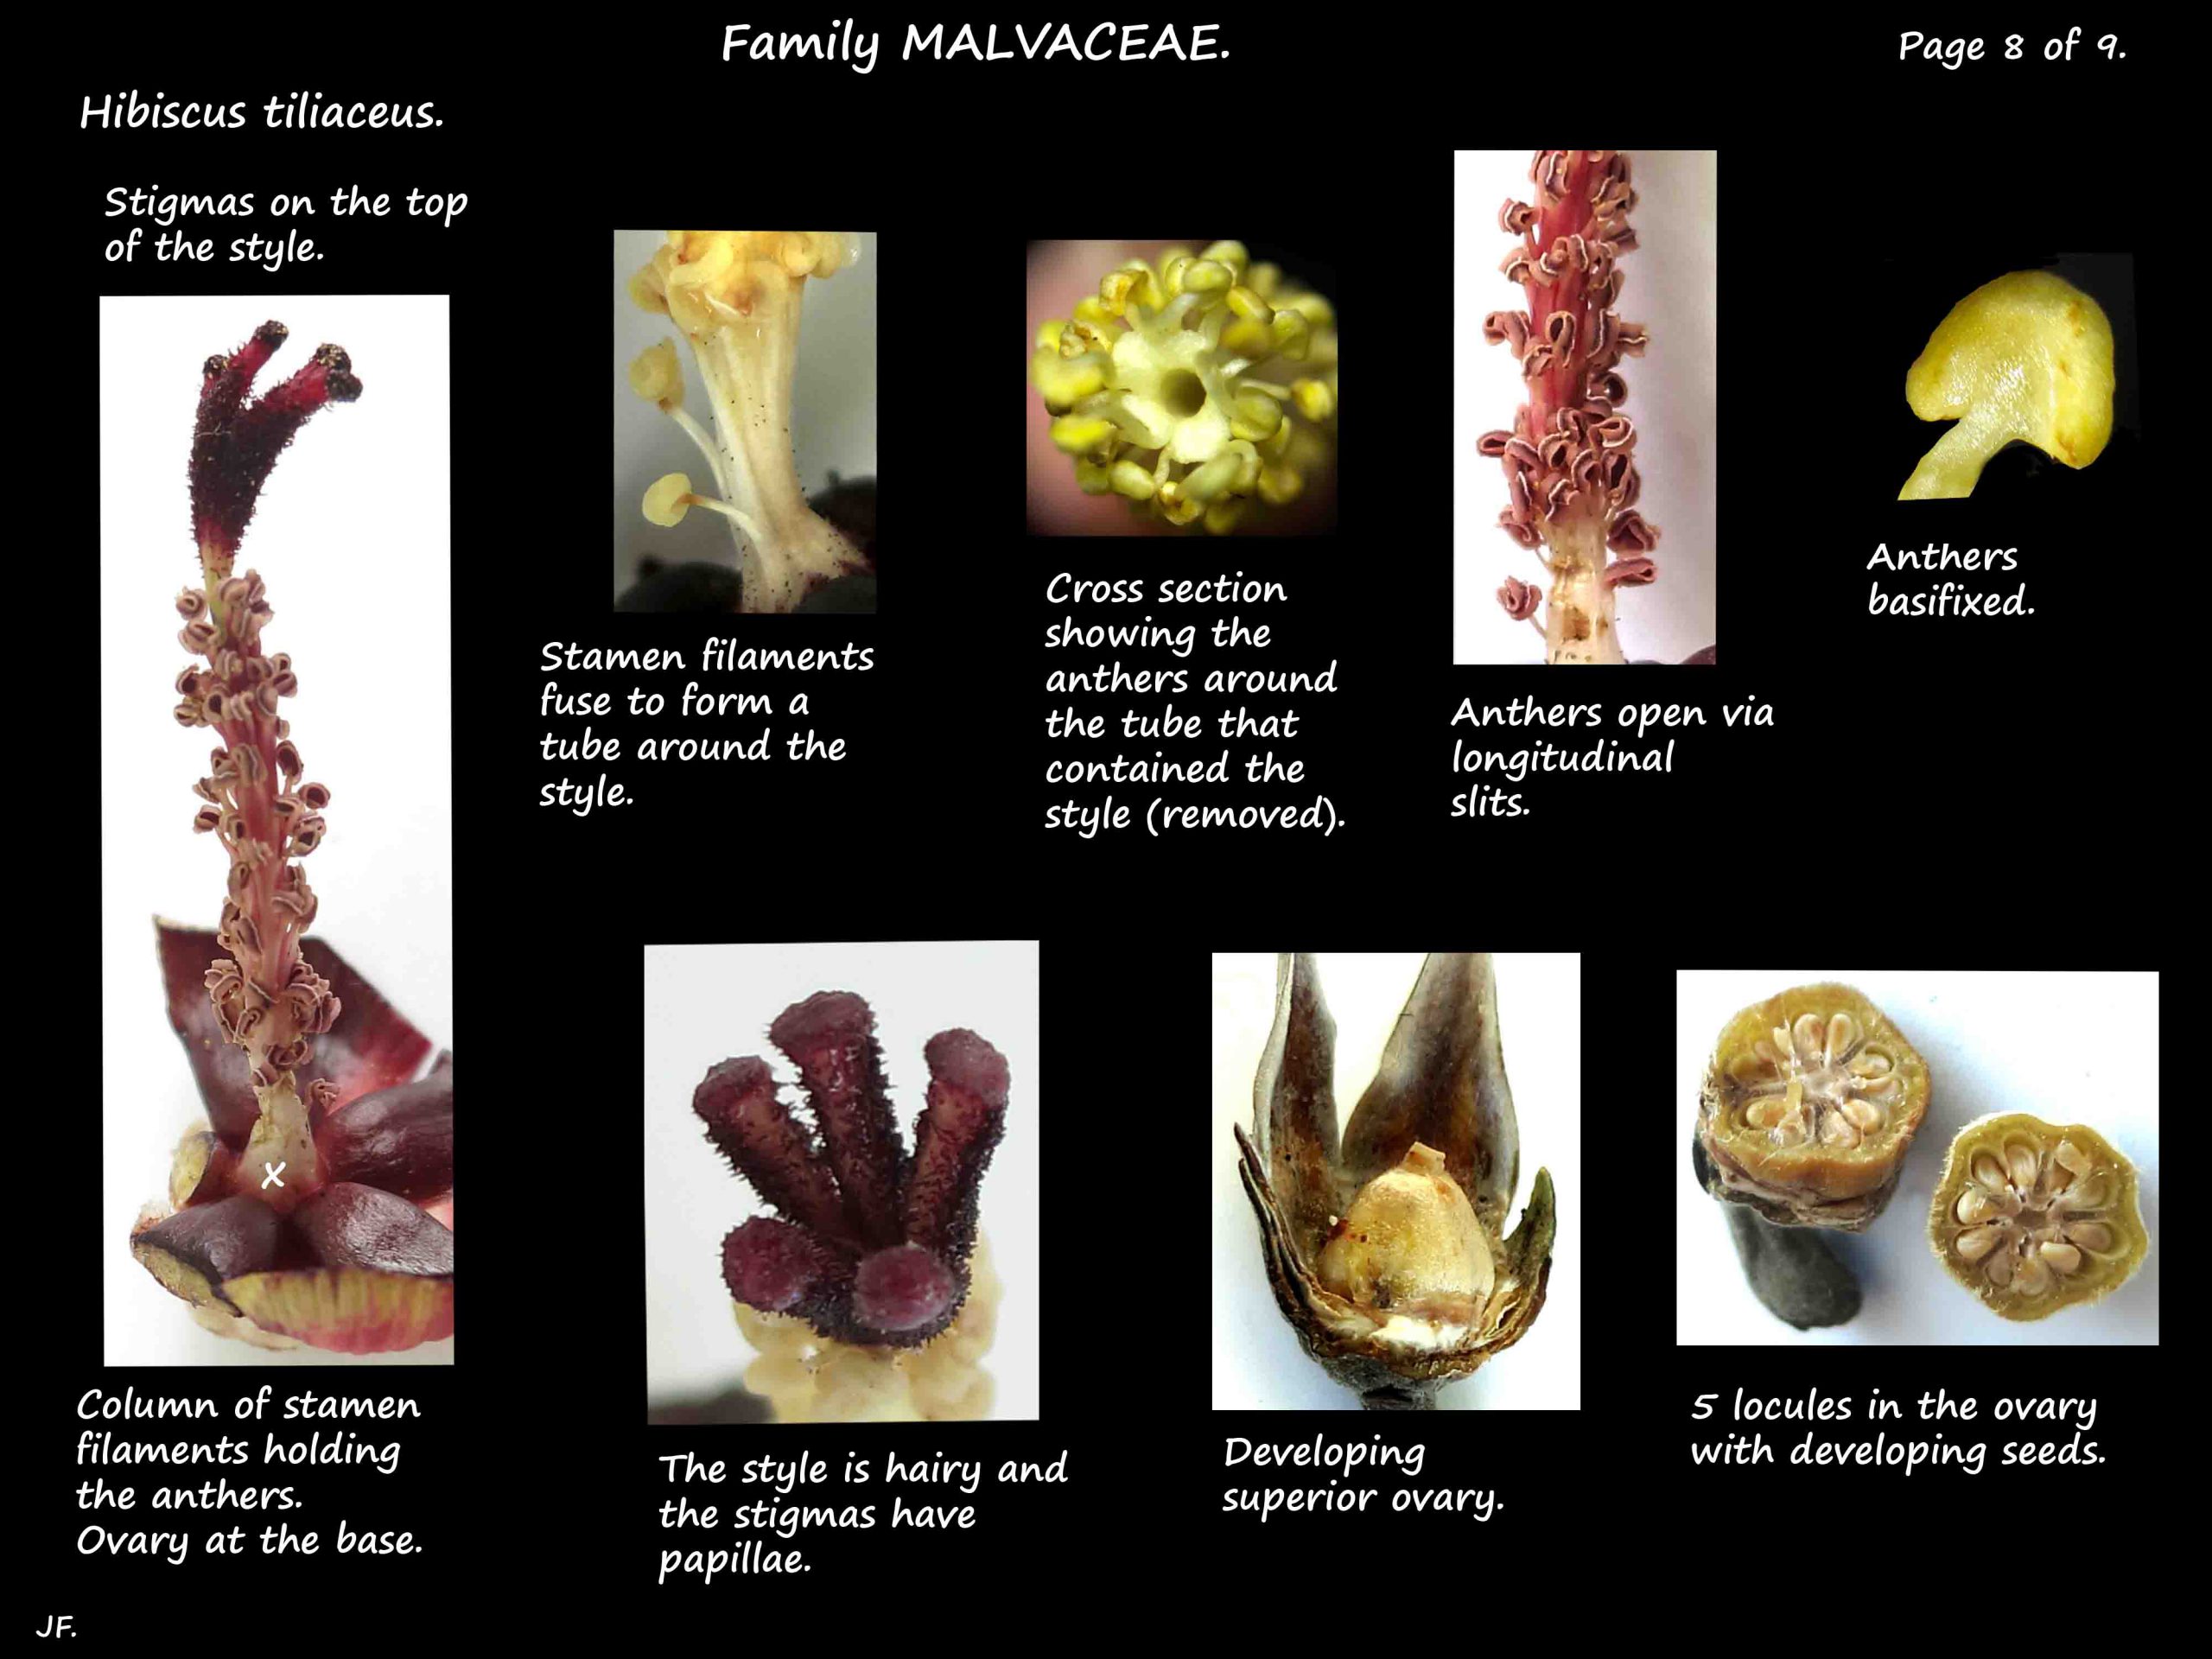 8 Staminal column & ovary of Hibiscus tiliaceus